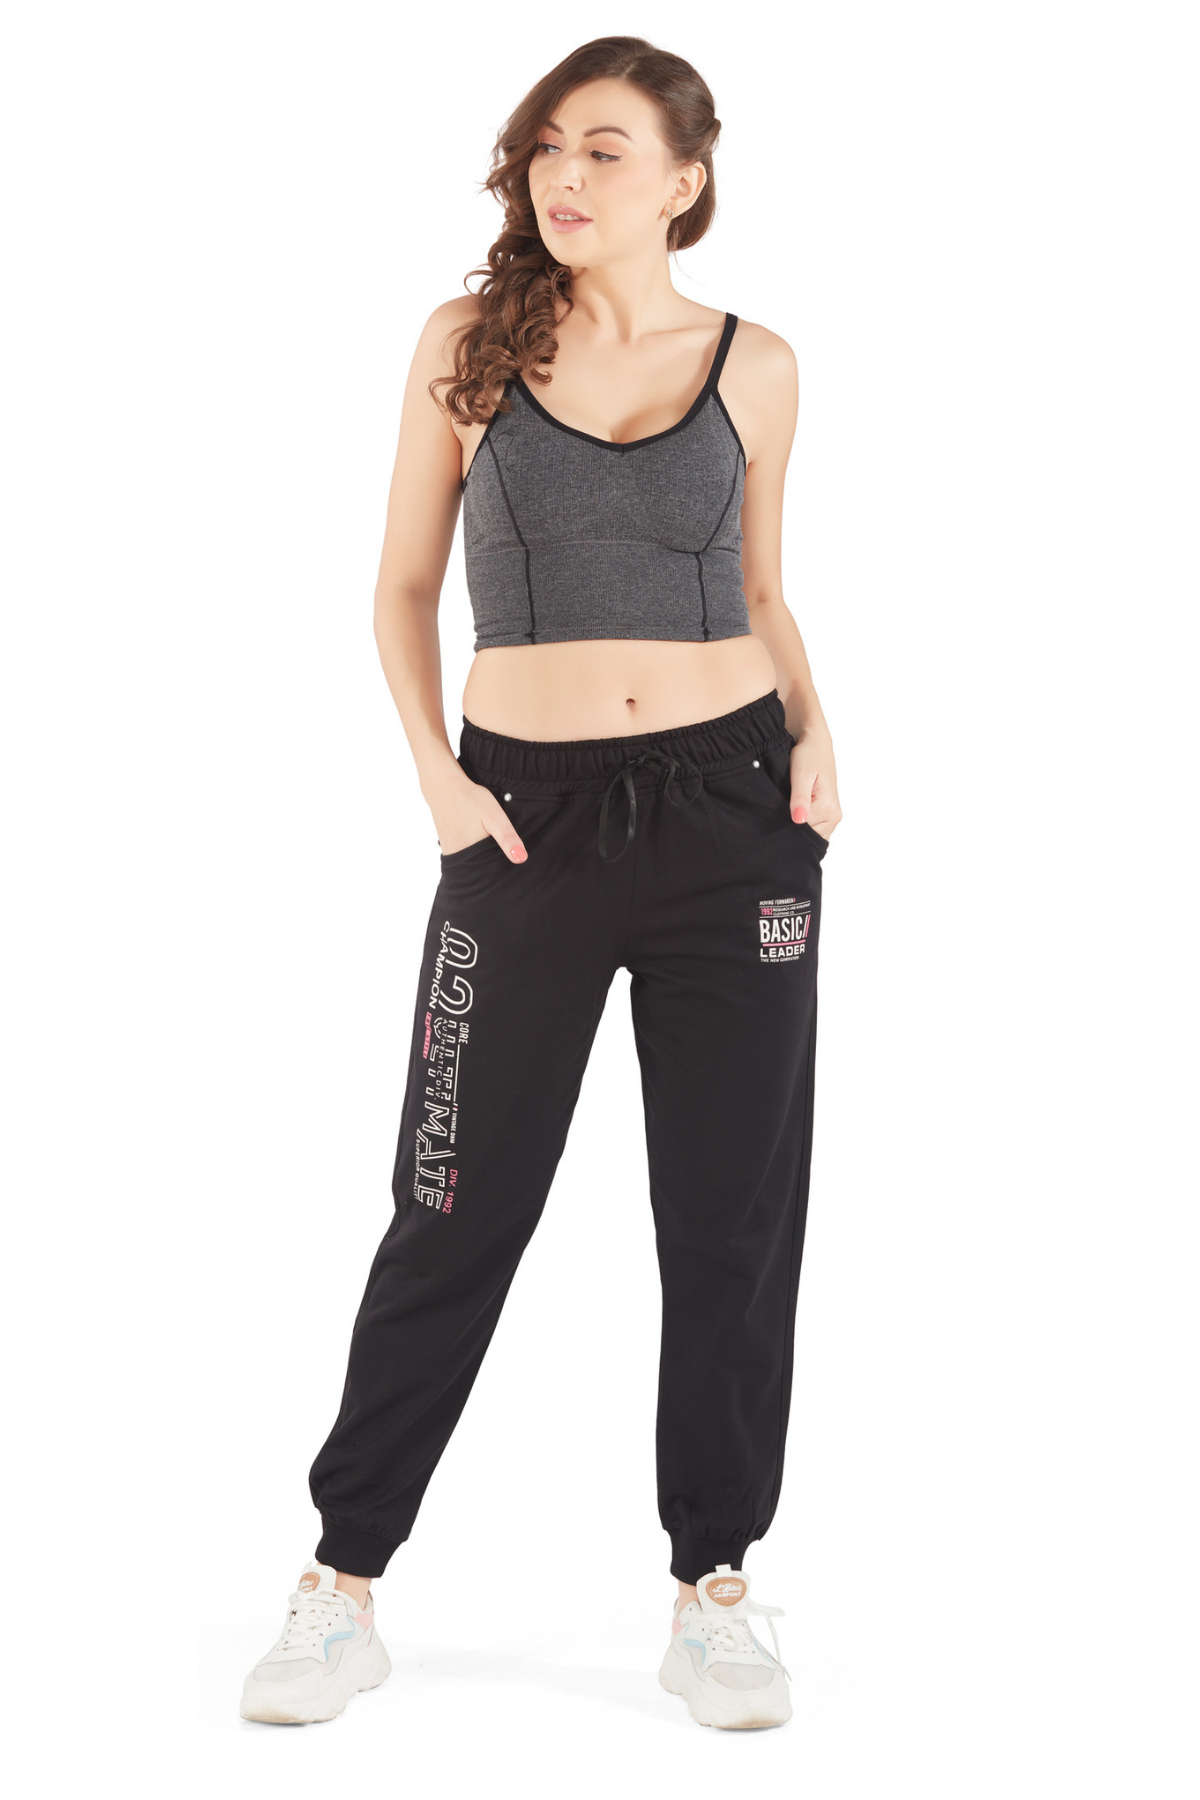 Cotton Joggers For Women Regular Fit Jogging Gym Pants (Black)